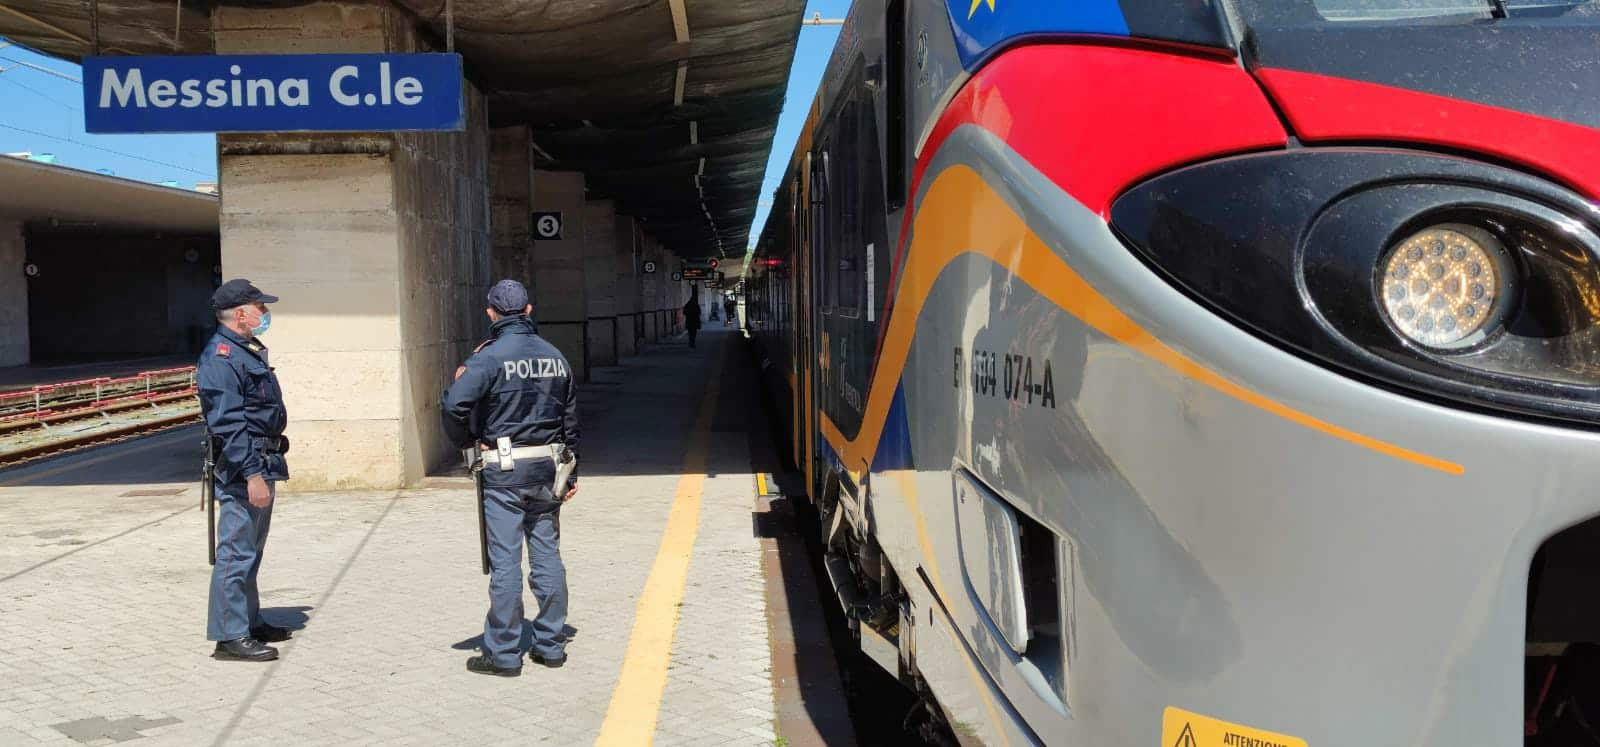 Sicurezza nelle stazioni ferroviarie: 4 indagati e oltre 2.500 persone controllate in Sicilia